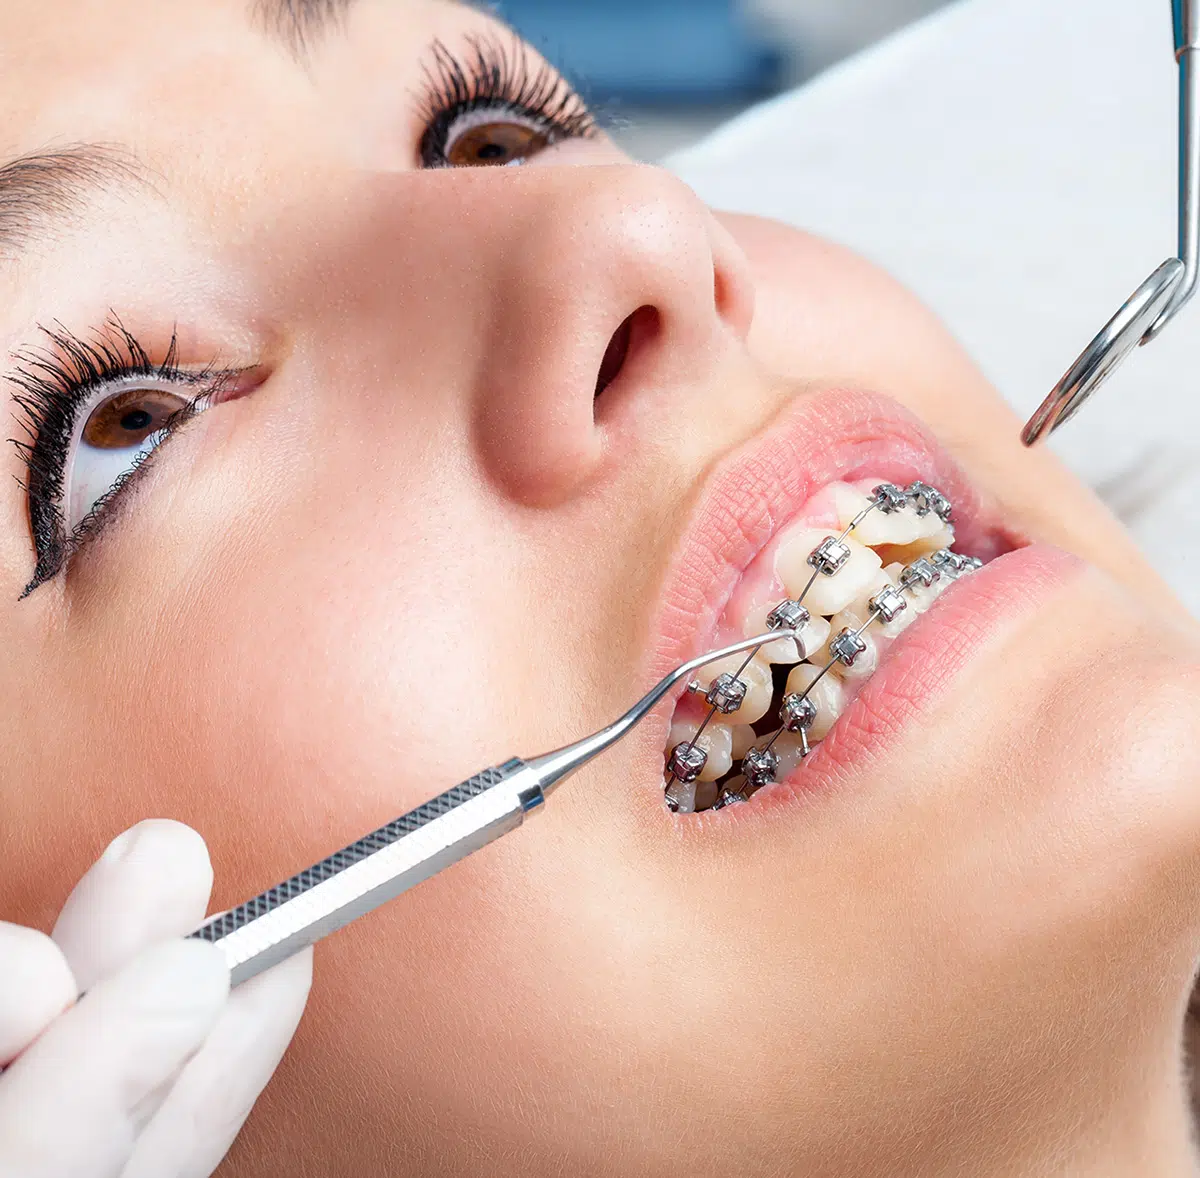 Dentist checking female dental braces in Chandler, AZ | Smiles of Chandler